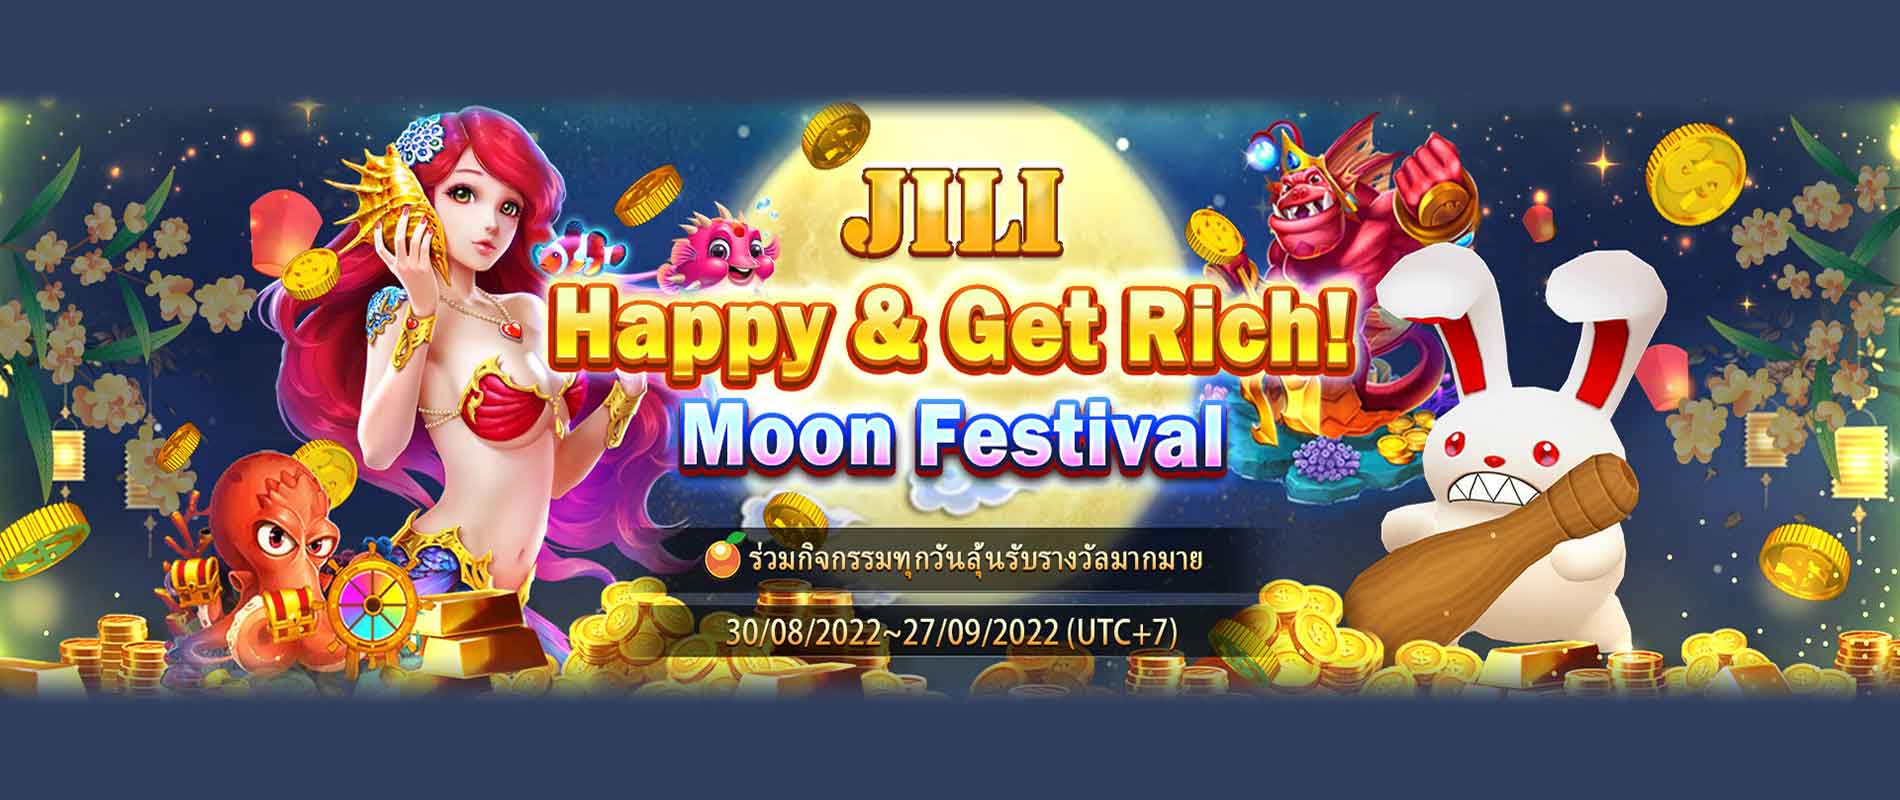 JILI-Moon-Festival